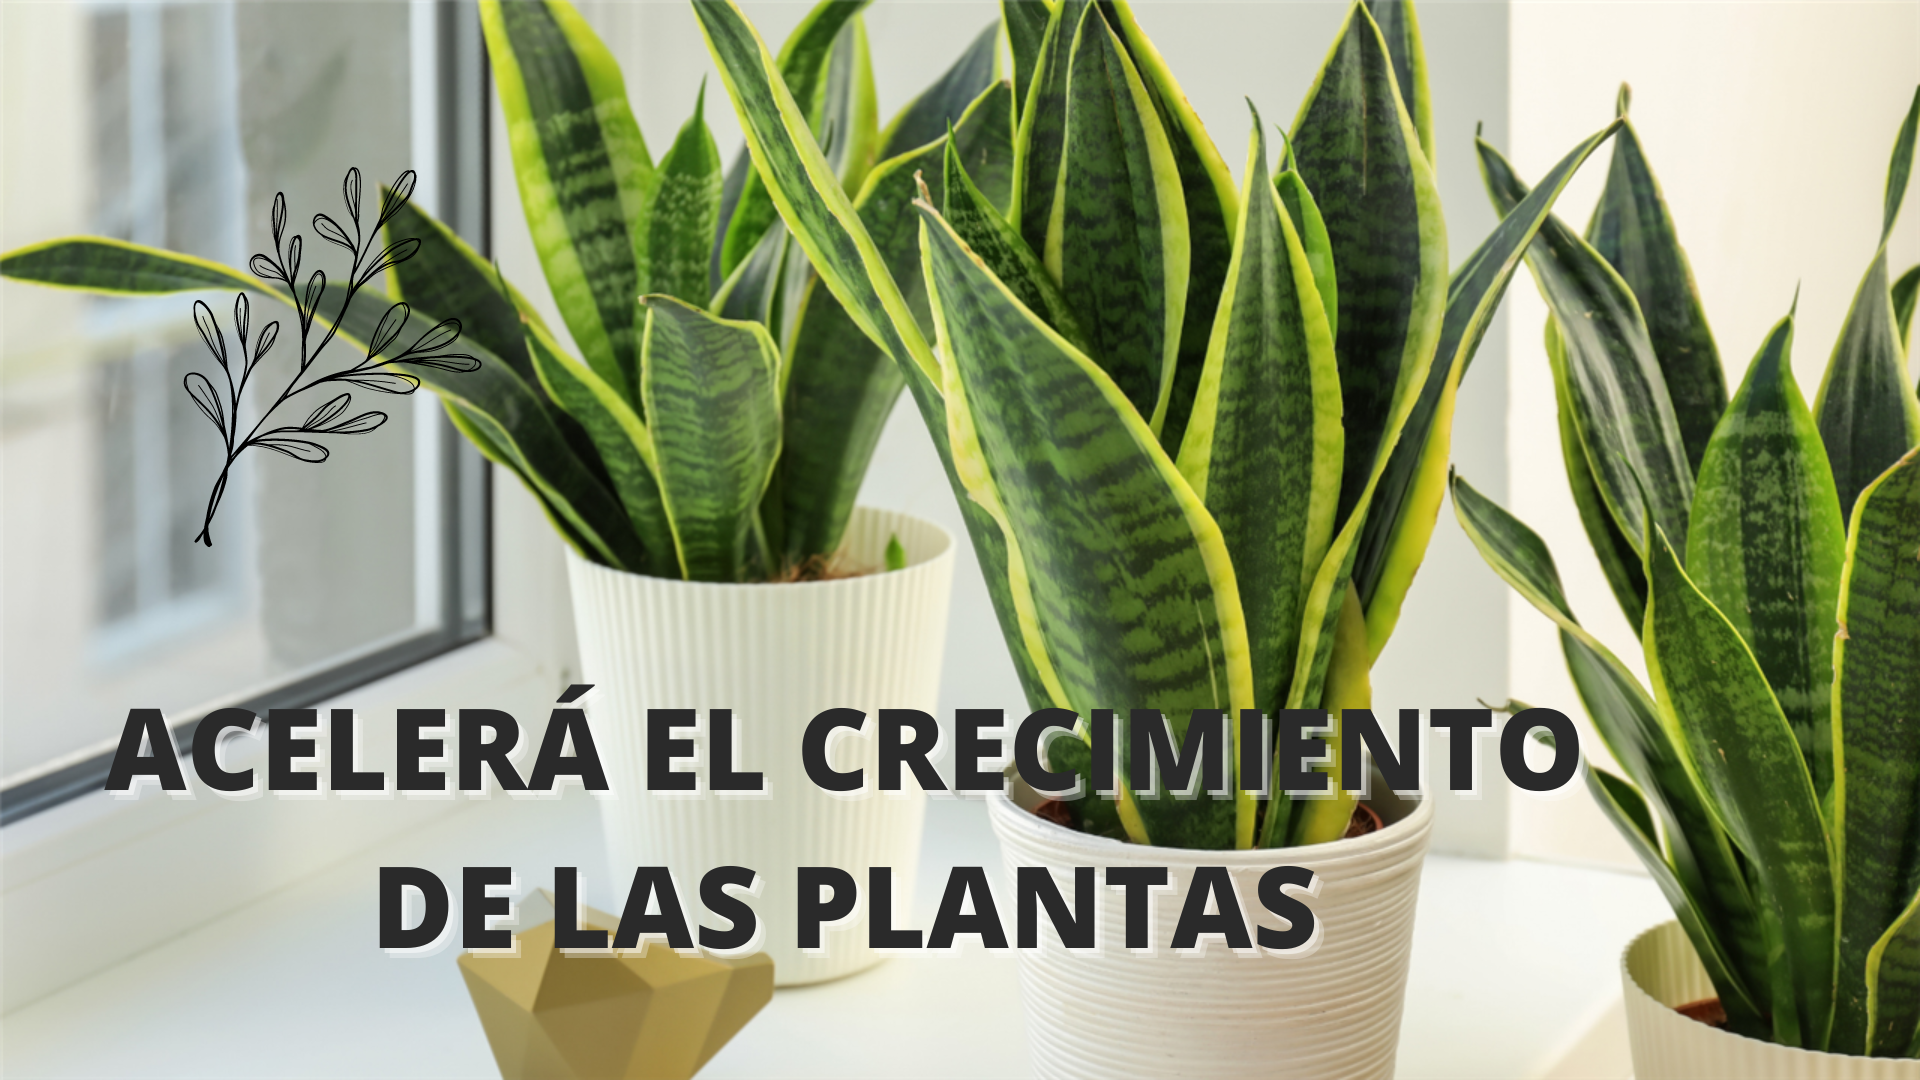 Acelerá el crecimiento de las plantas - Mendoza Post